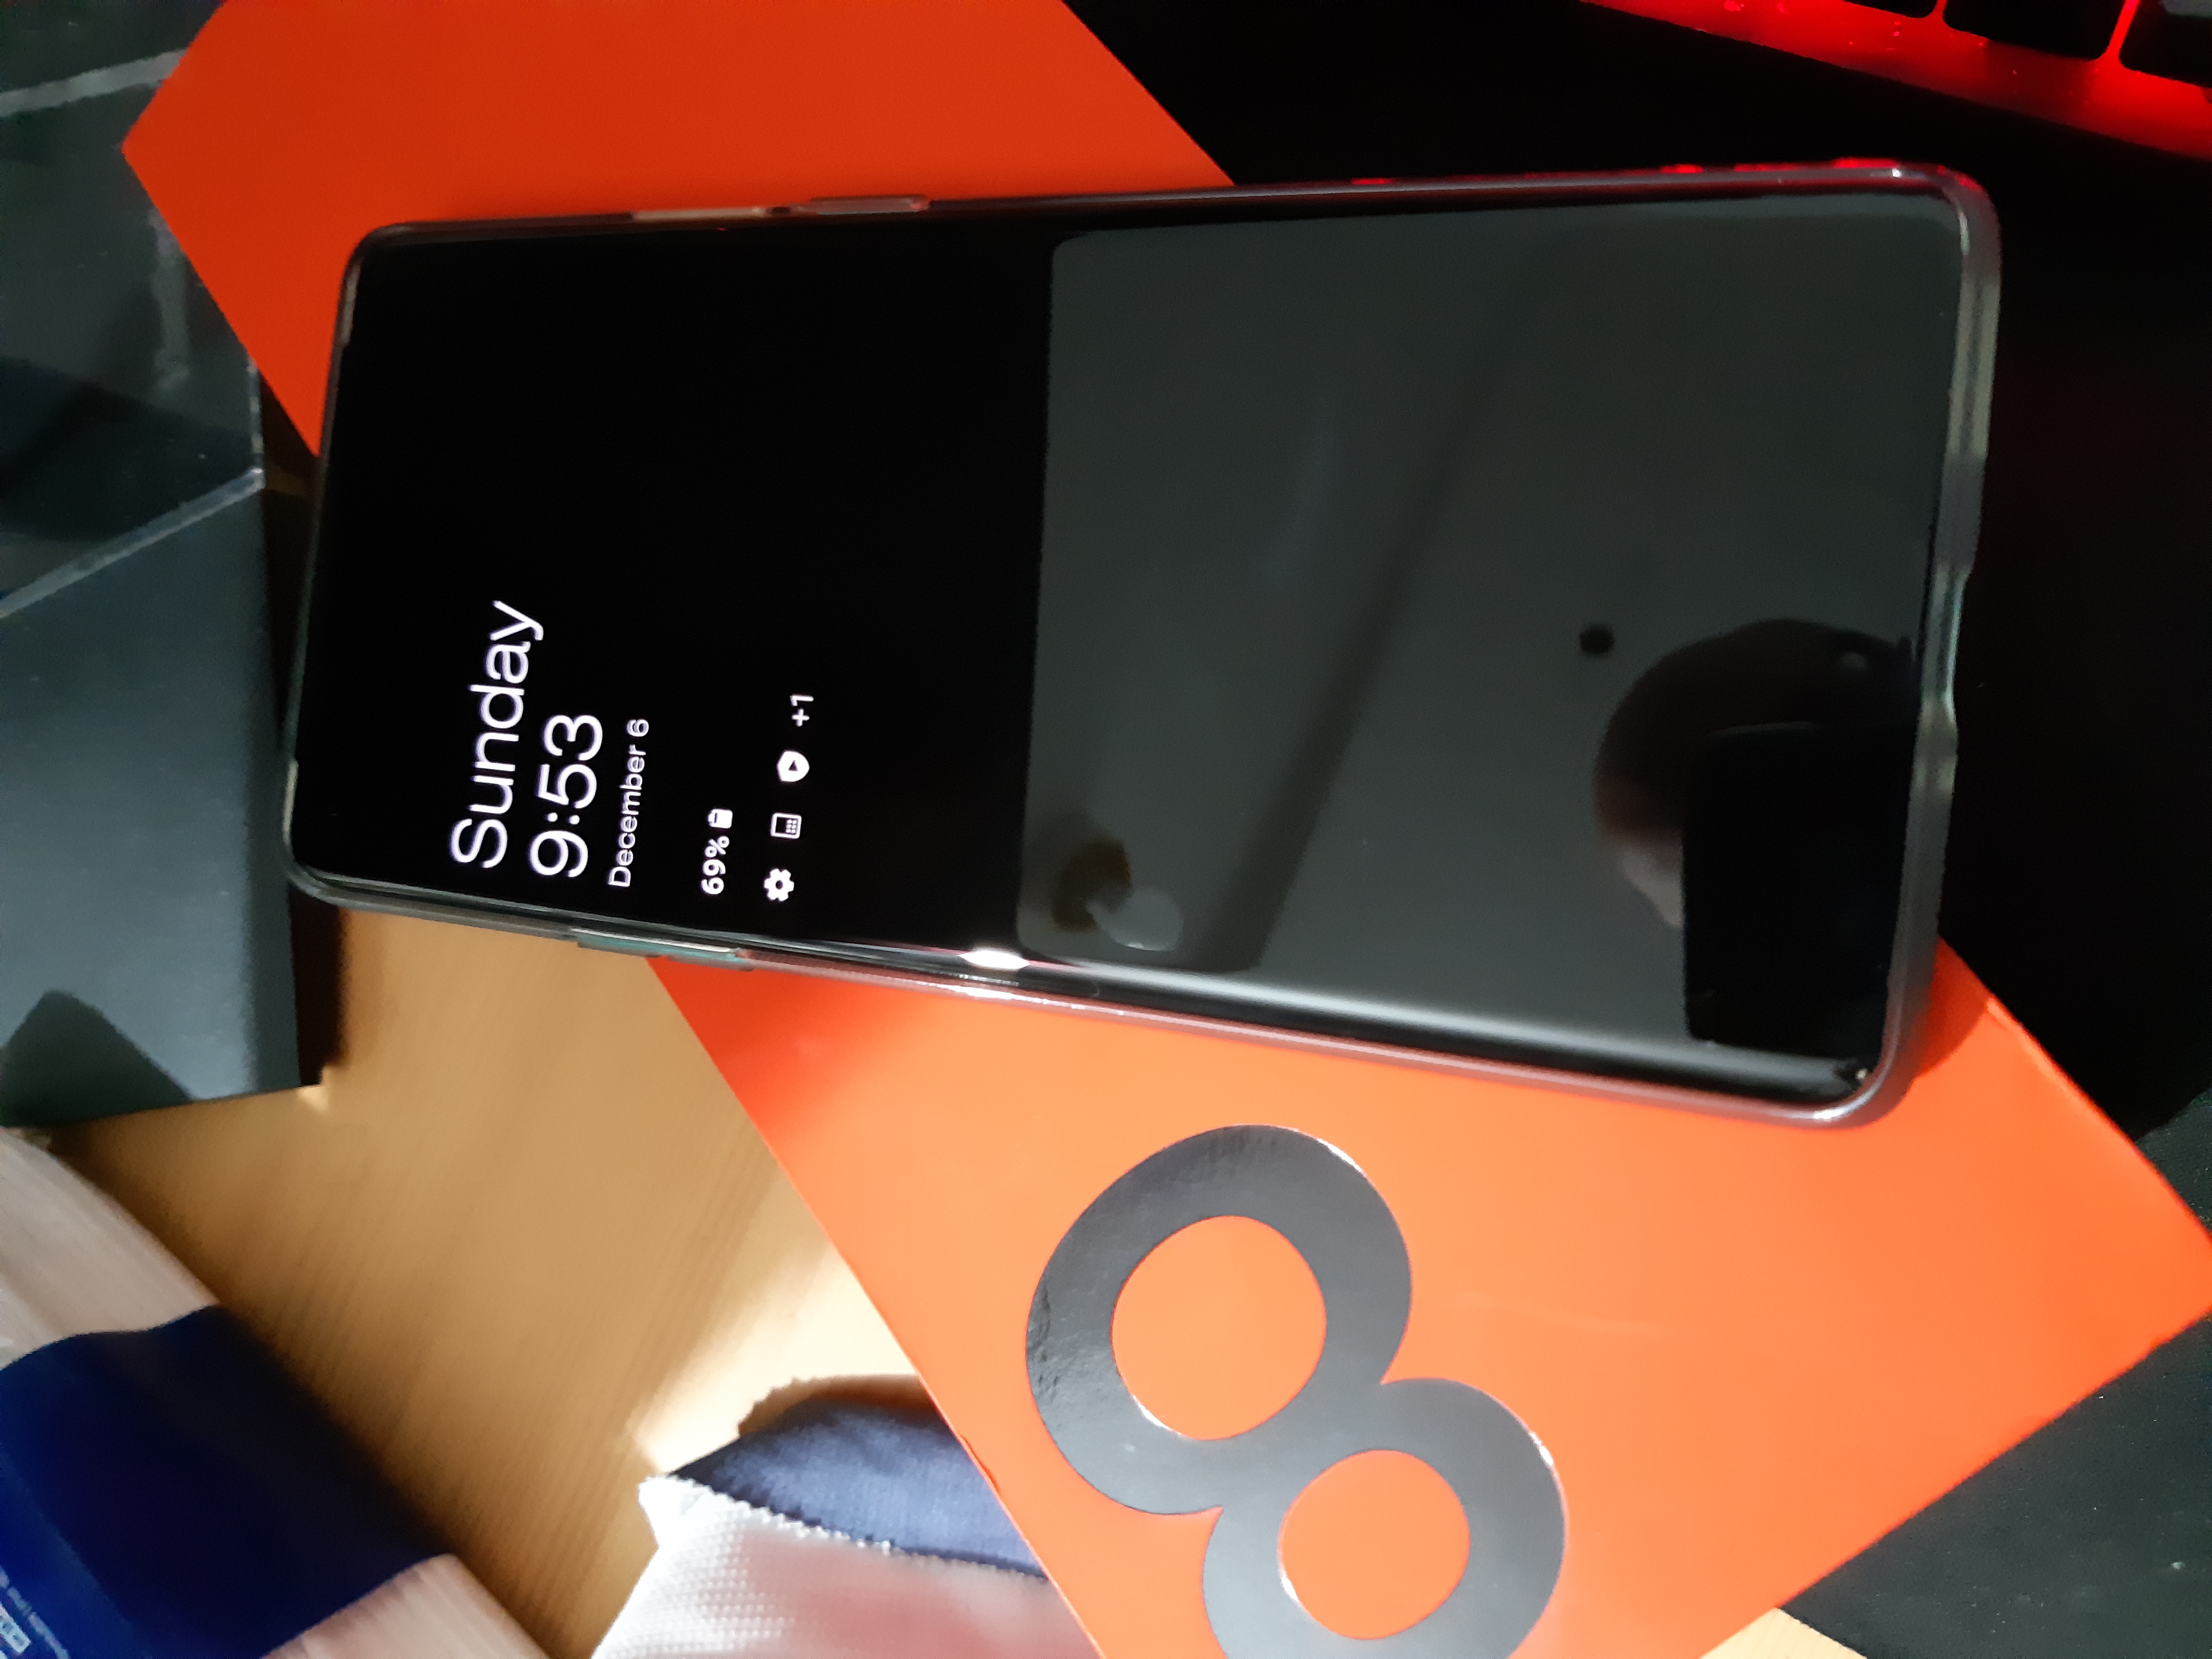 למכירה או החלפה OnePlus 8 Pro 12GB Ram באחריות - FXP